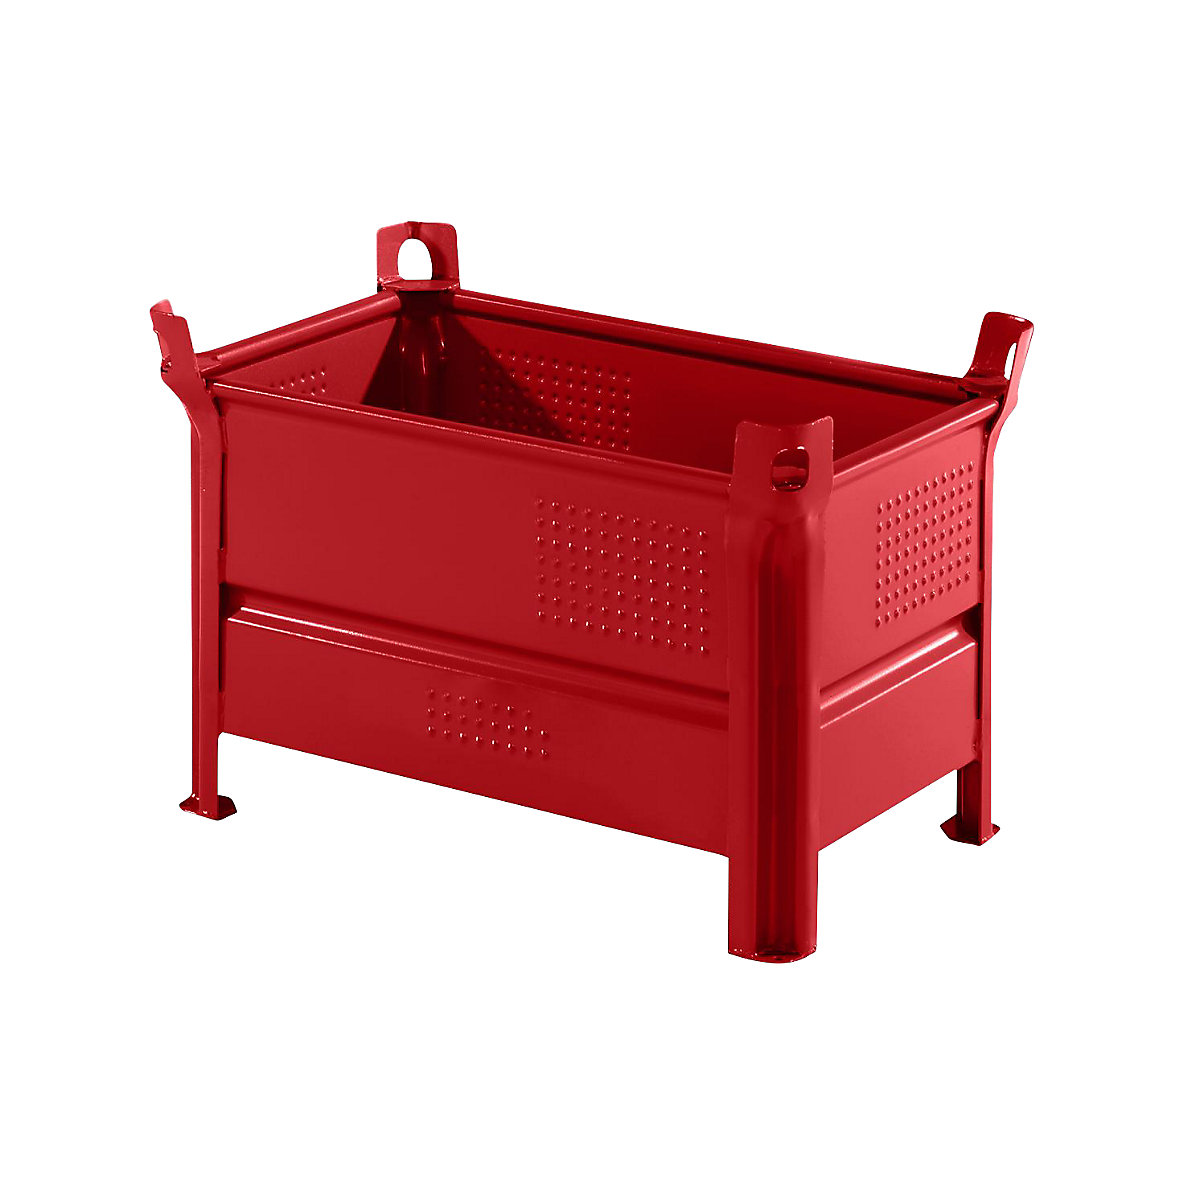 Pojemnik do ustawiania w stos z pełnymi ściankami – Heson, szer. x dł. 500 x 800 mm, nośność 500 kg, czerwony, od 5 szt.-8